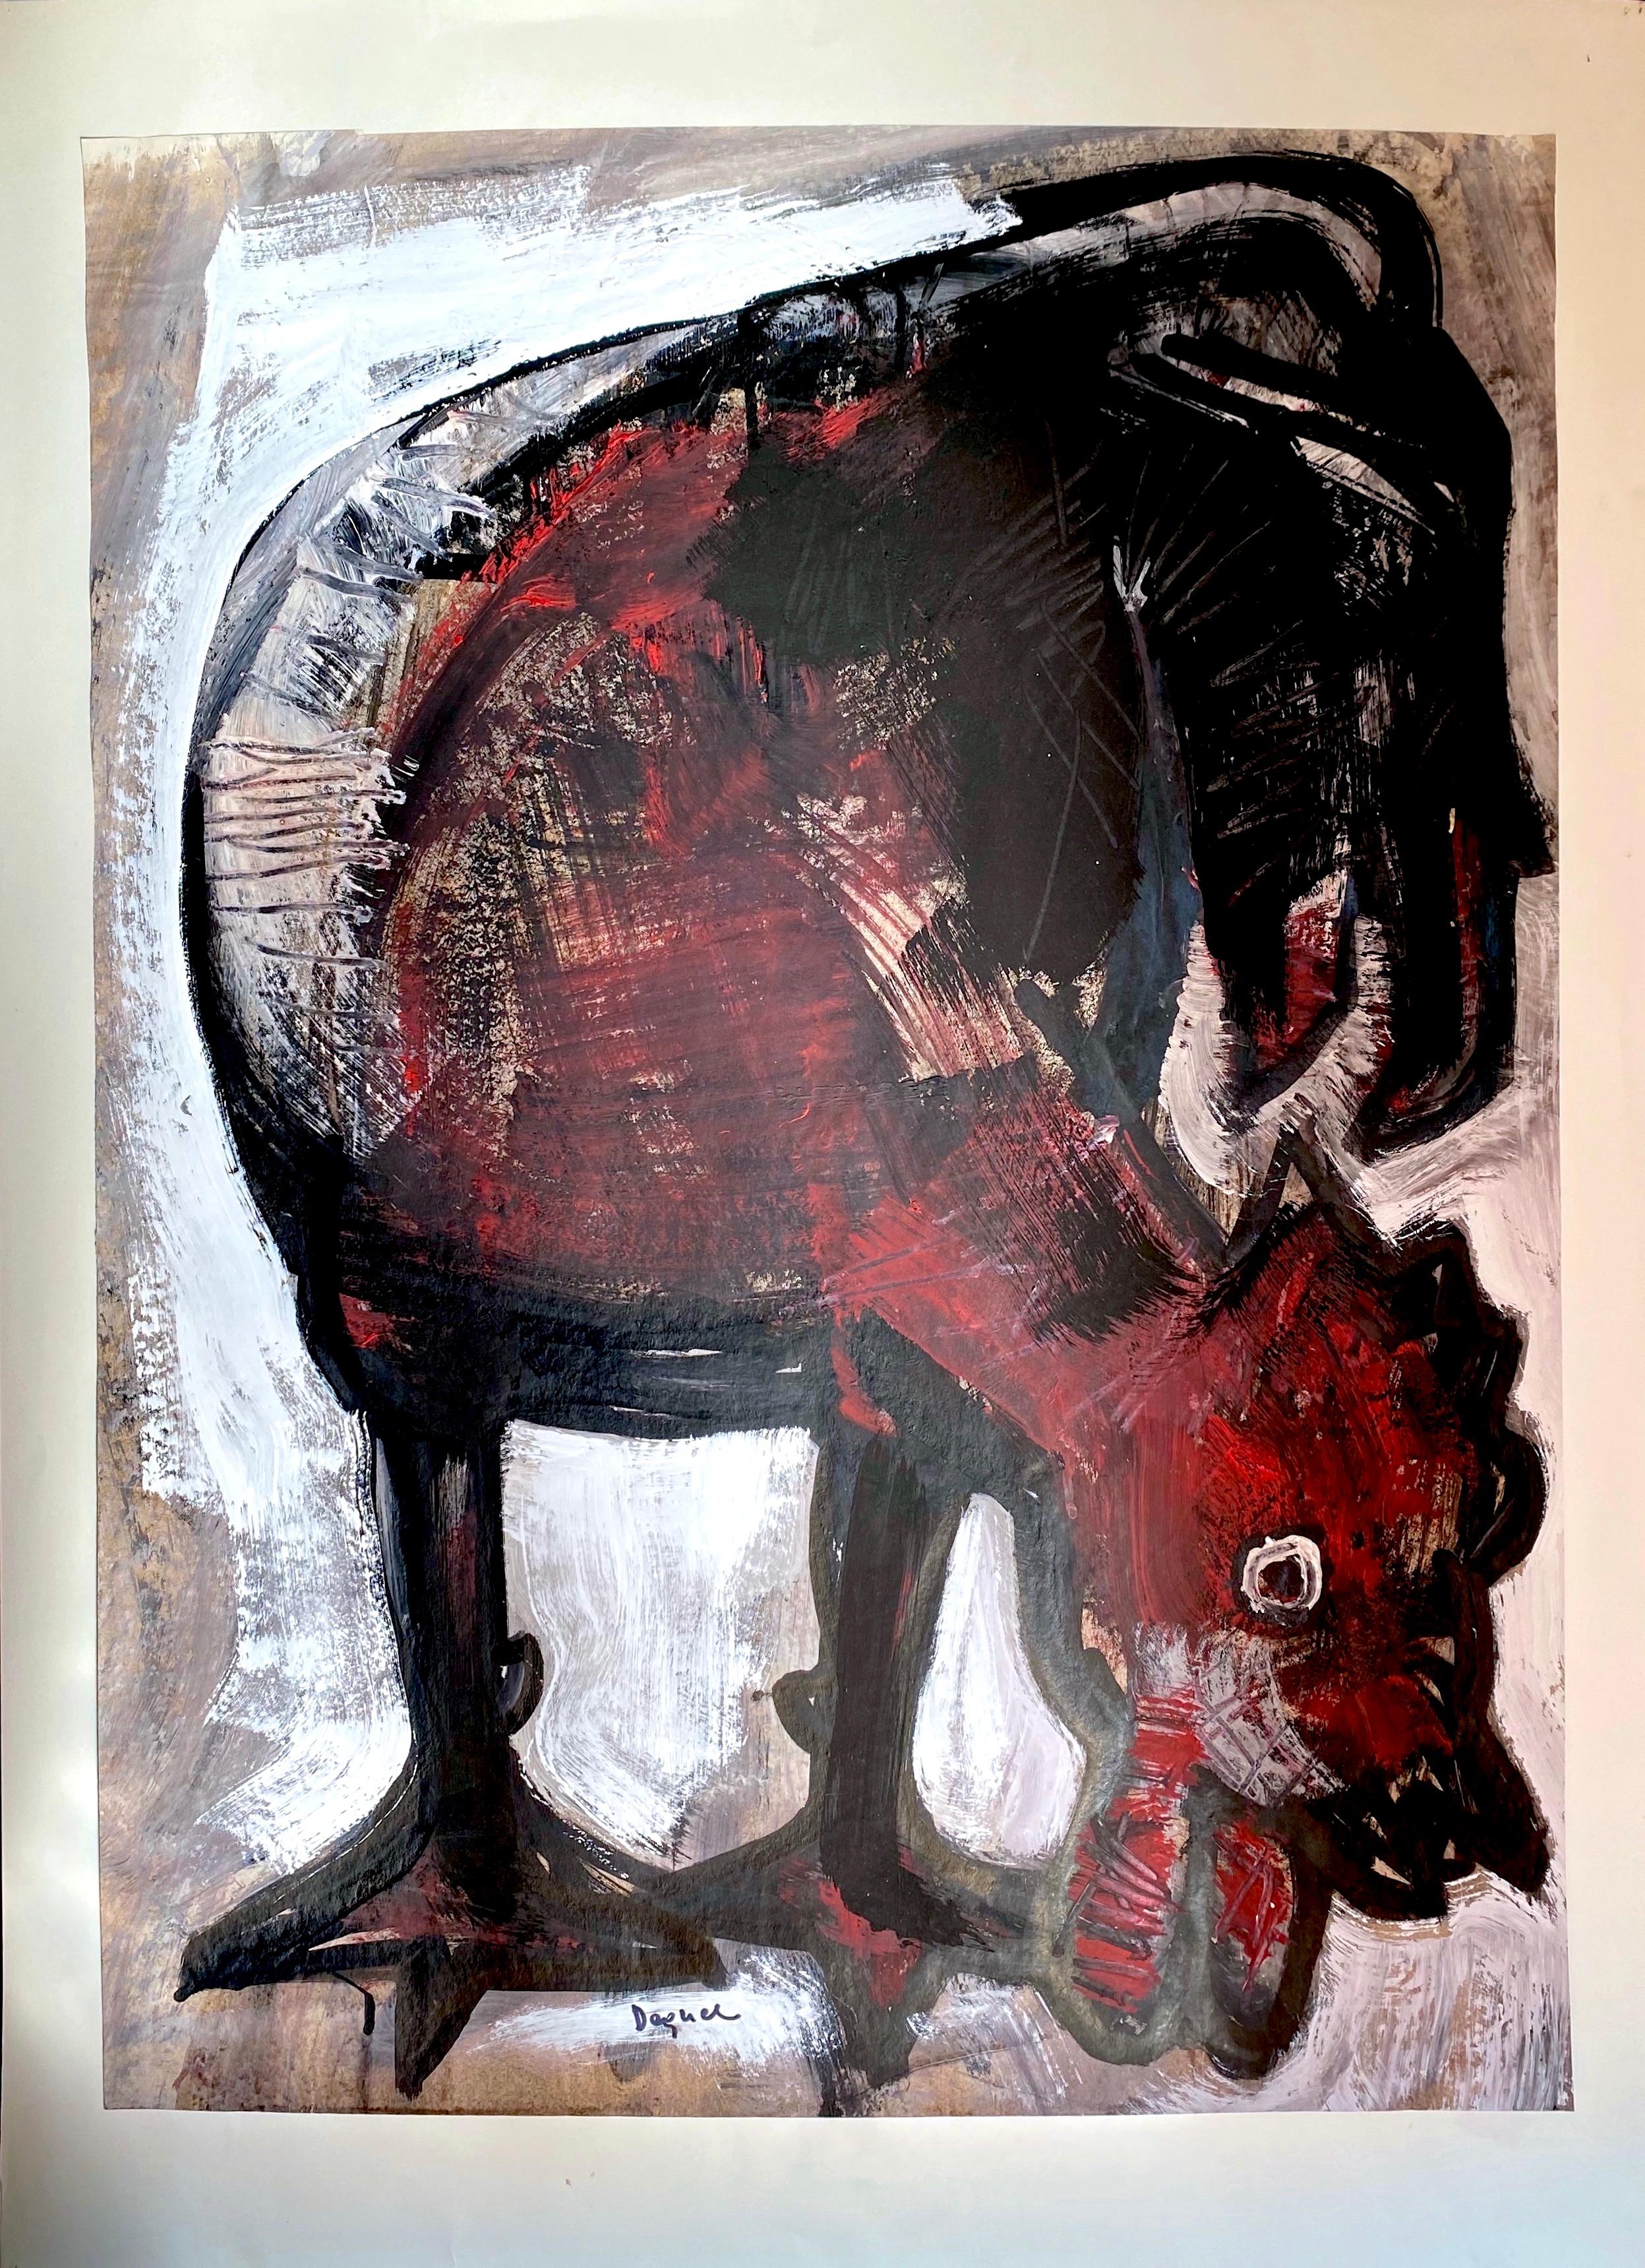 Meisterhaft gemalt ist dieser kastanienbraune und schwarze Hahn des italienischen Künstlers Oreste Dequel (1923-1989). Auch wenn sein Werk nicht so bekannt ist, handelt es sich doch um ein beeindruckendes figurales Kunstwerk eines der meistgemalten